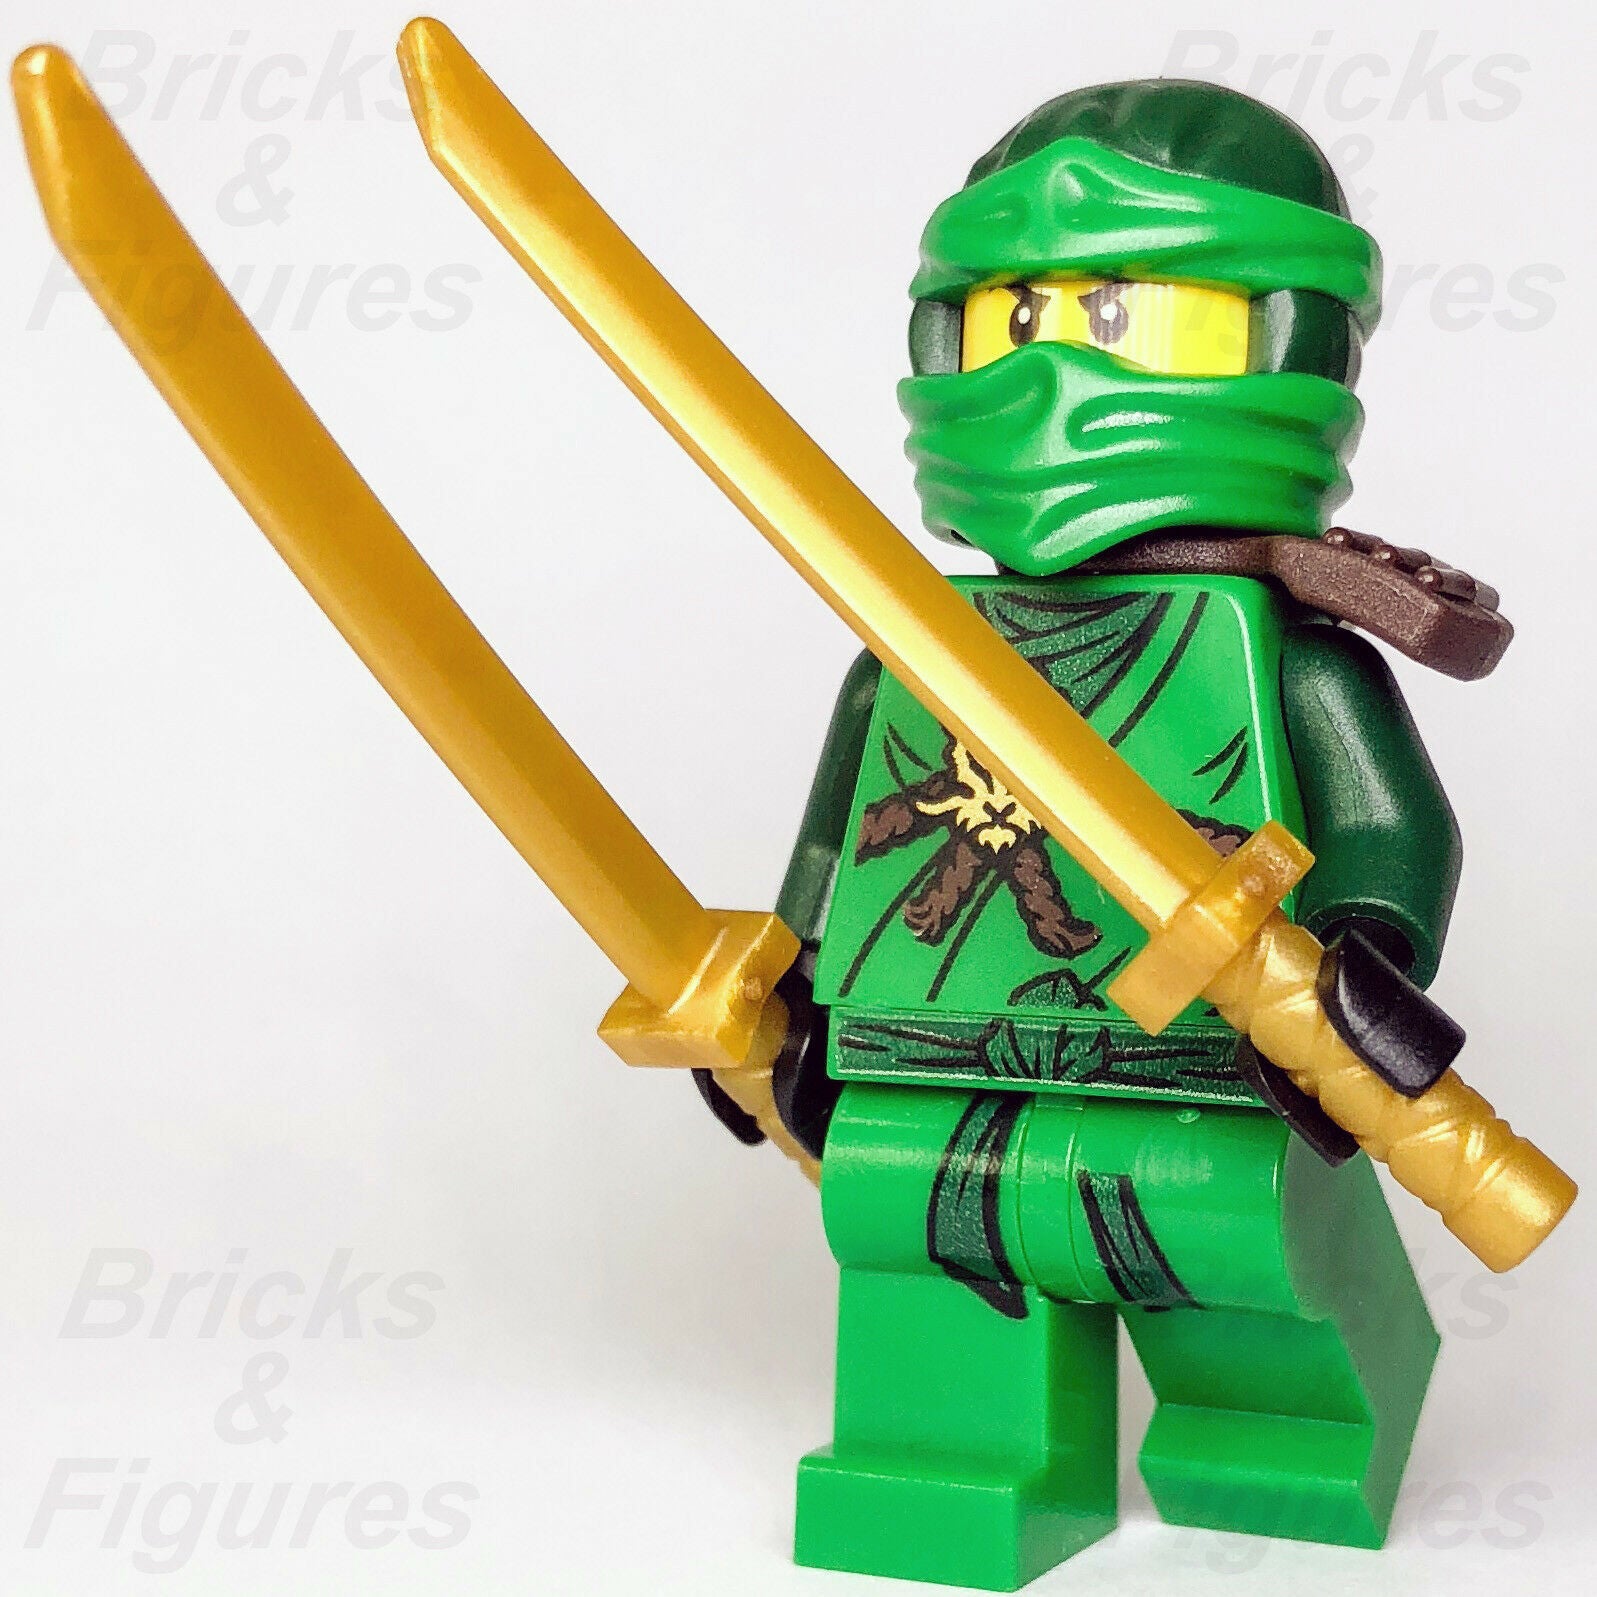 New Ninjago LEGO Lloyd Garmadon Ninja Day of the Departed Minifigure 70596 - Bricks & Figures